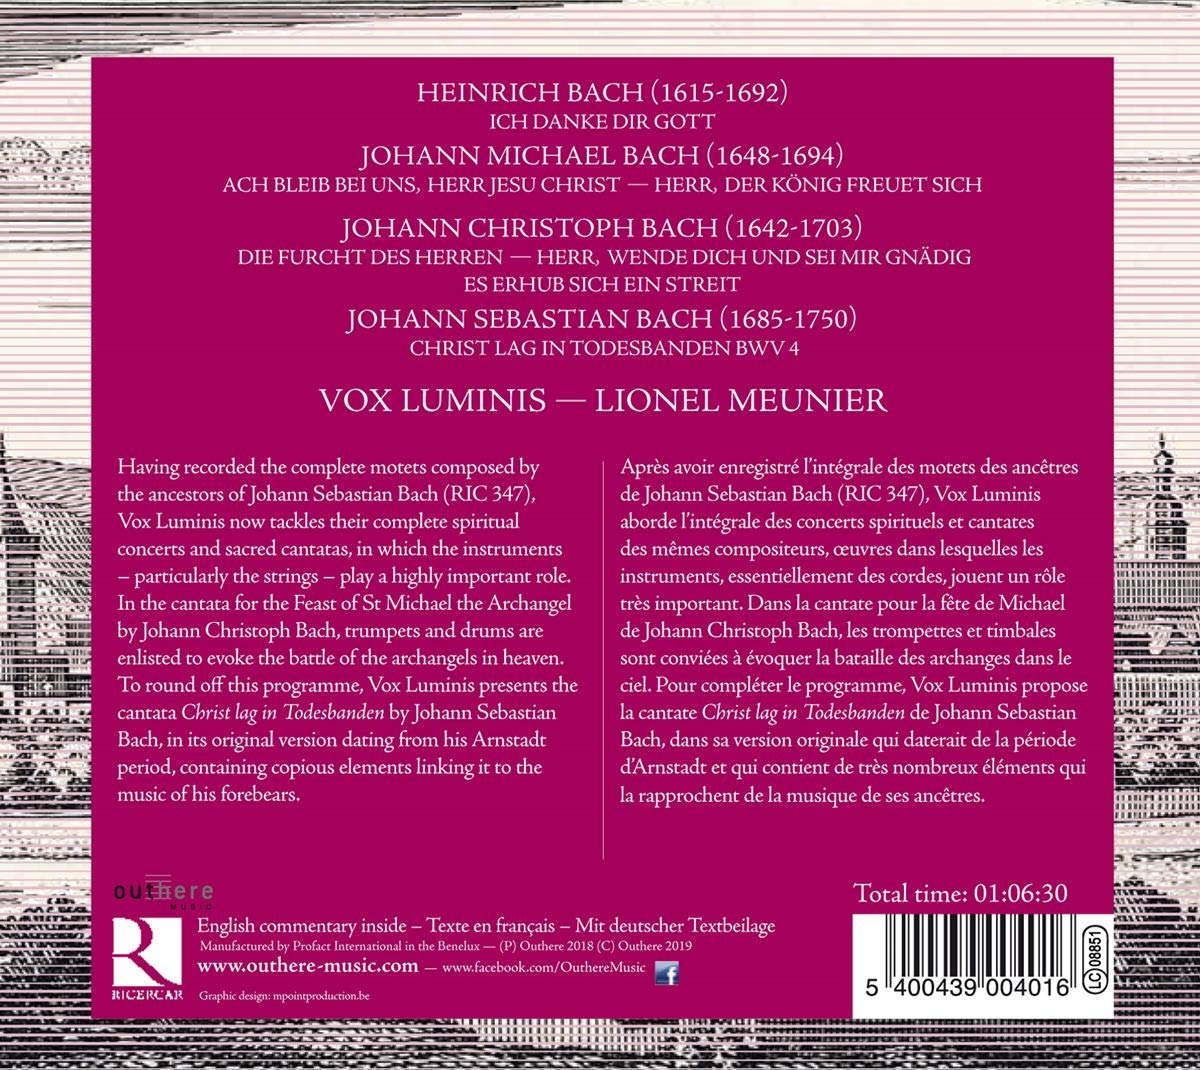 Lionel Meunier 바흐 가문의 칸타타 (Bach Family's Cantatas)